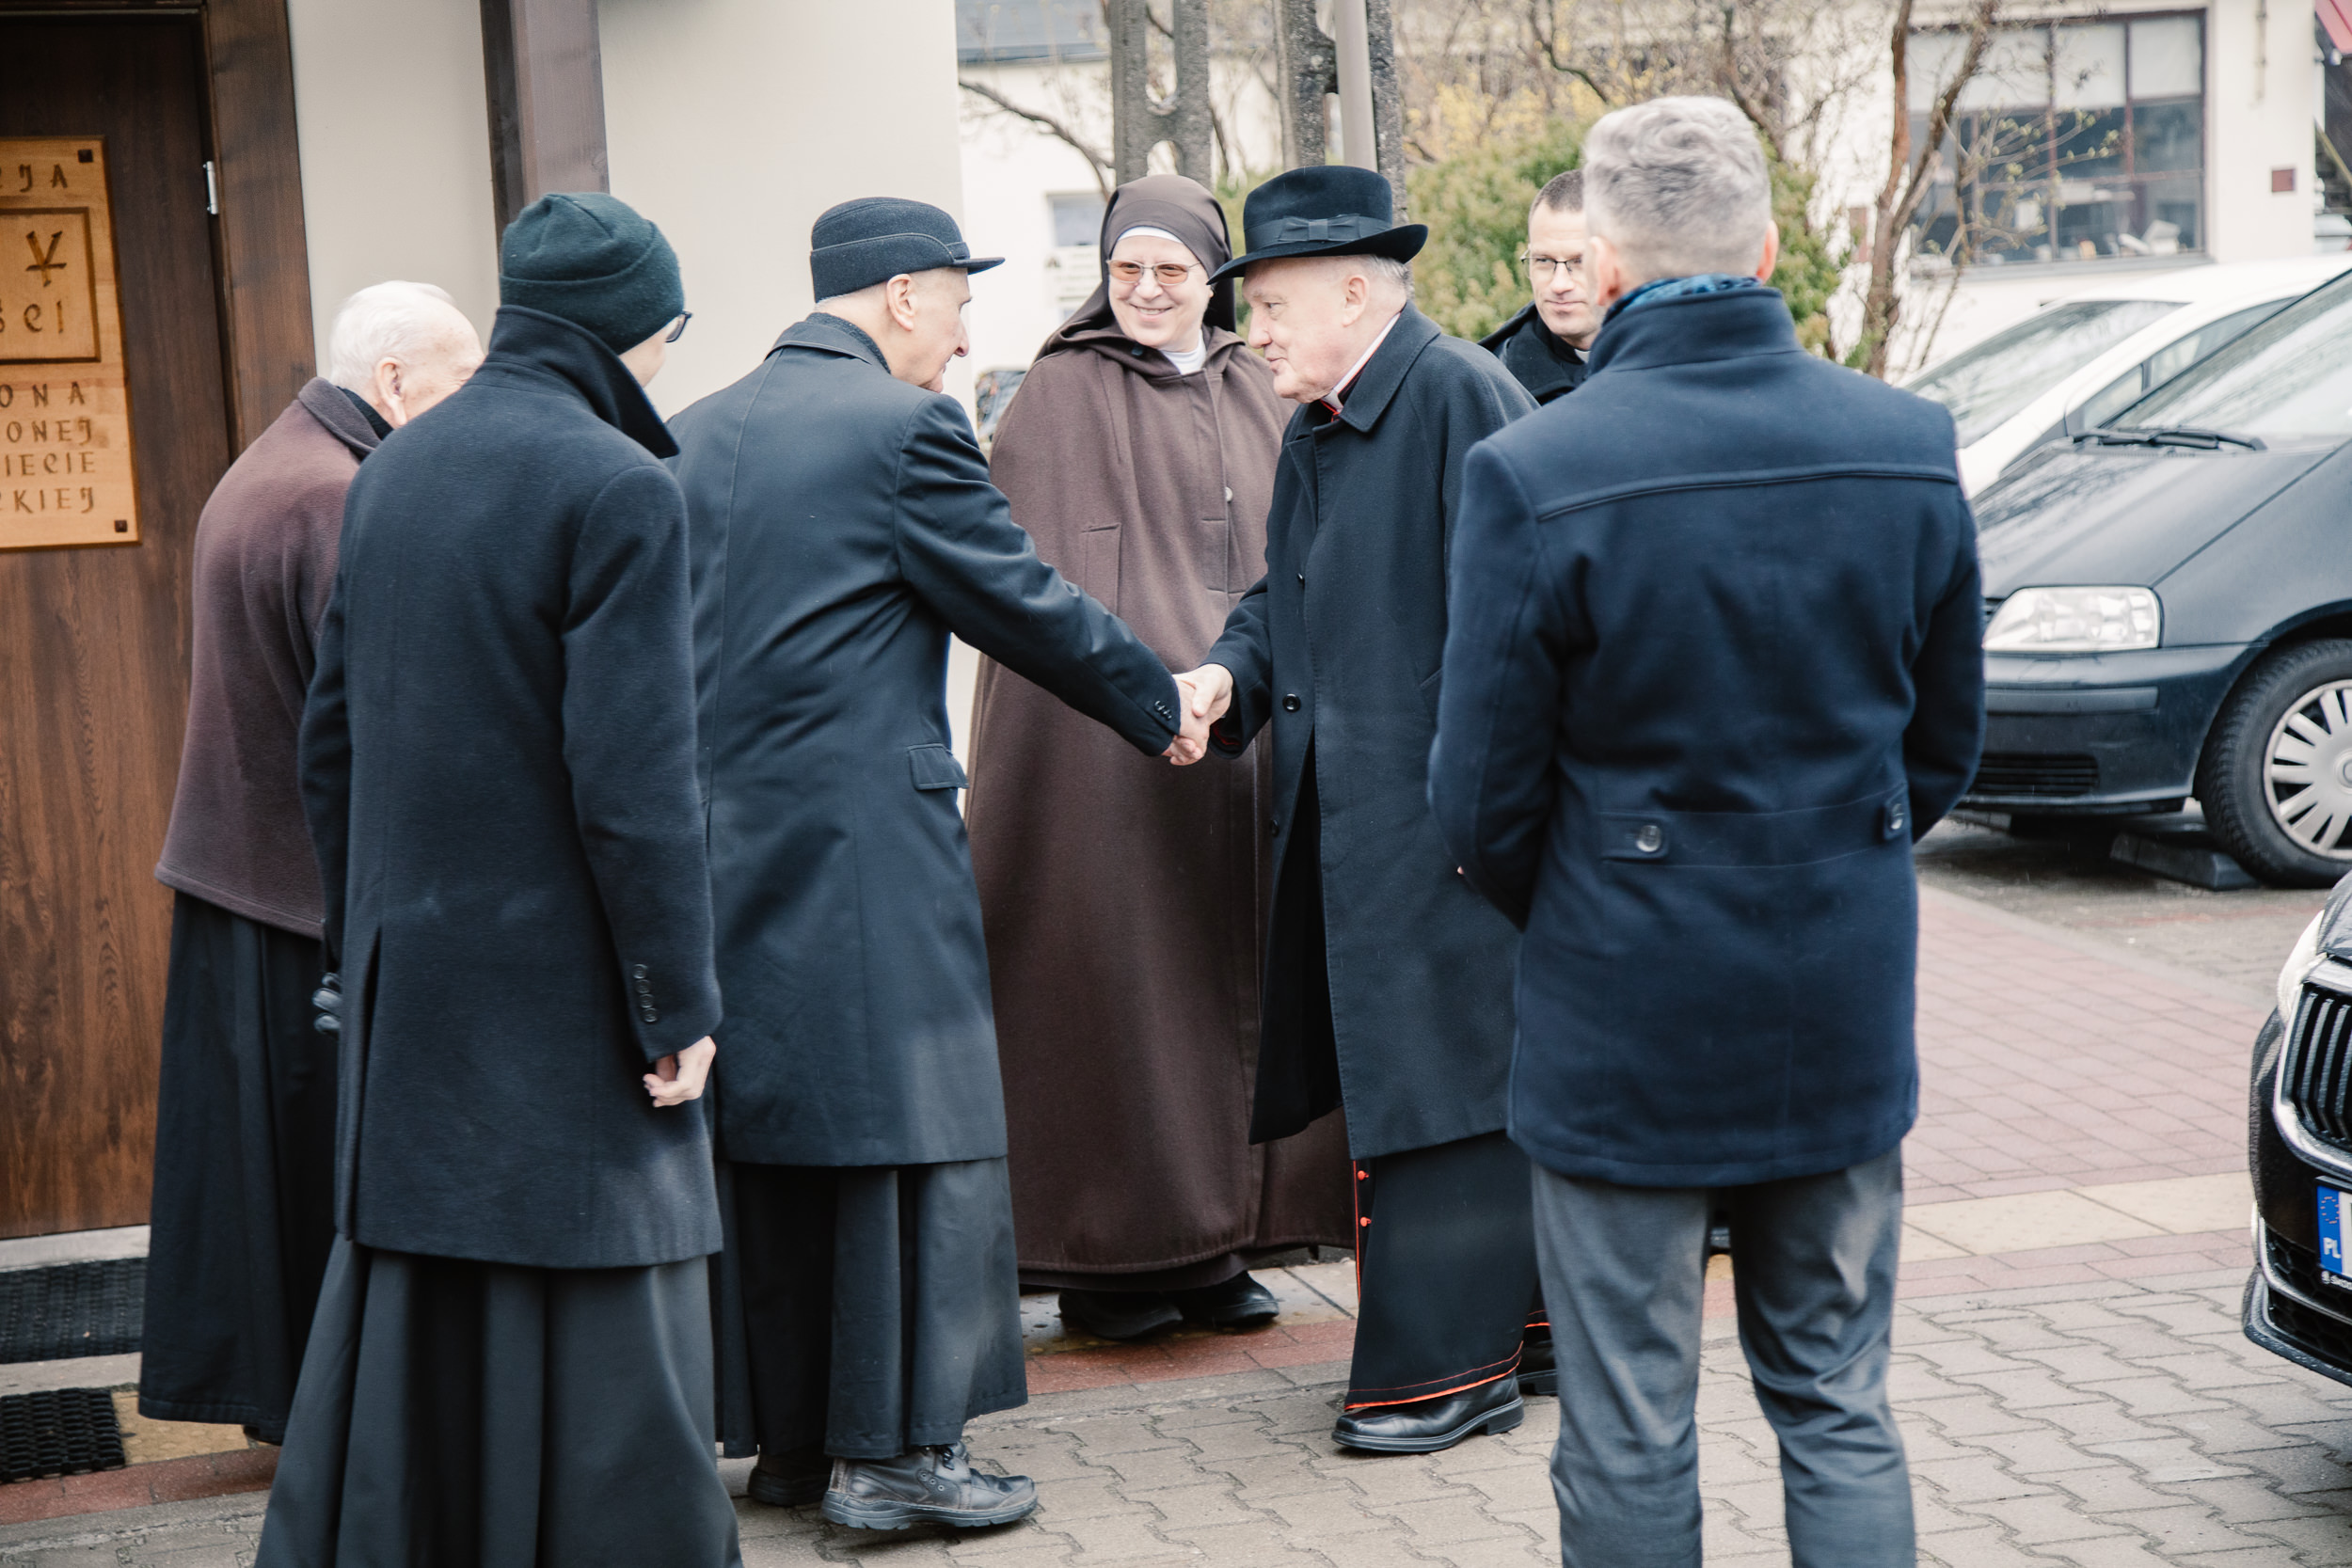 Ksiądz Kardynał Kazimierz Nycz wita się z księżmi przed zakątkiem Matki Czackiej.